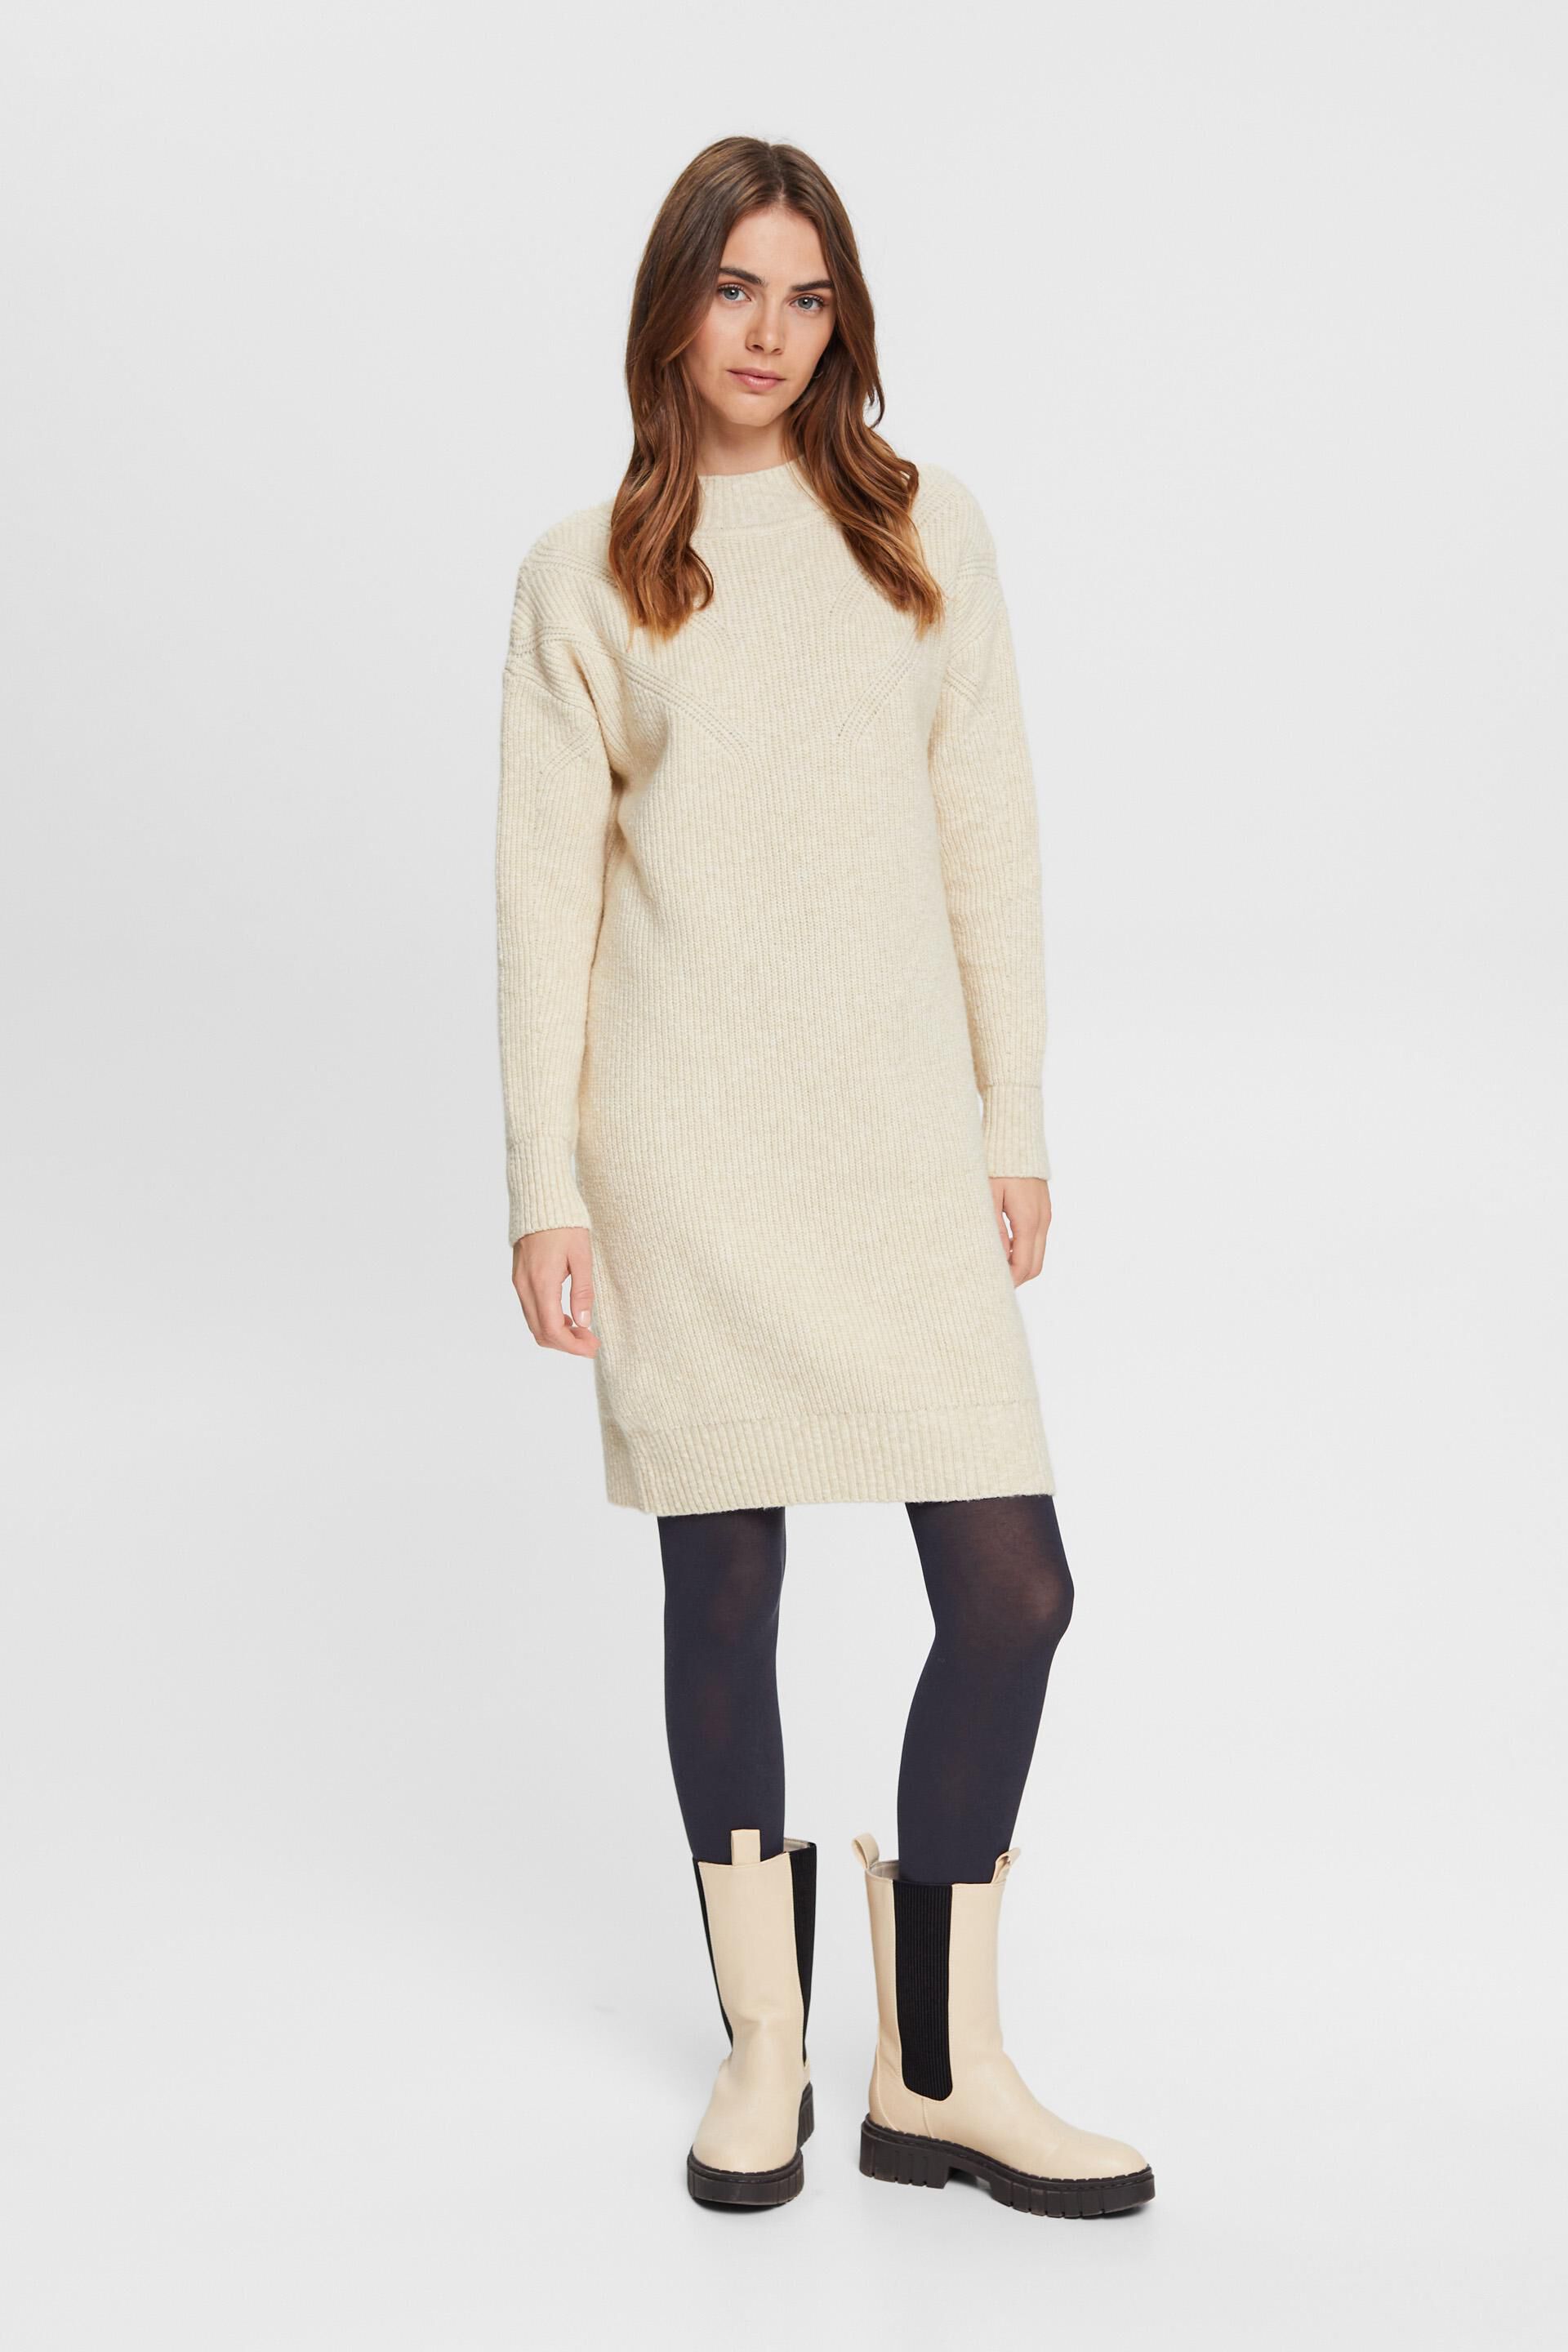 Esprit Online Store Blickdichte Leggings aus Baumwollmischung